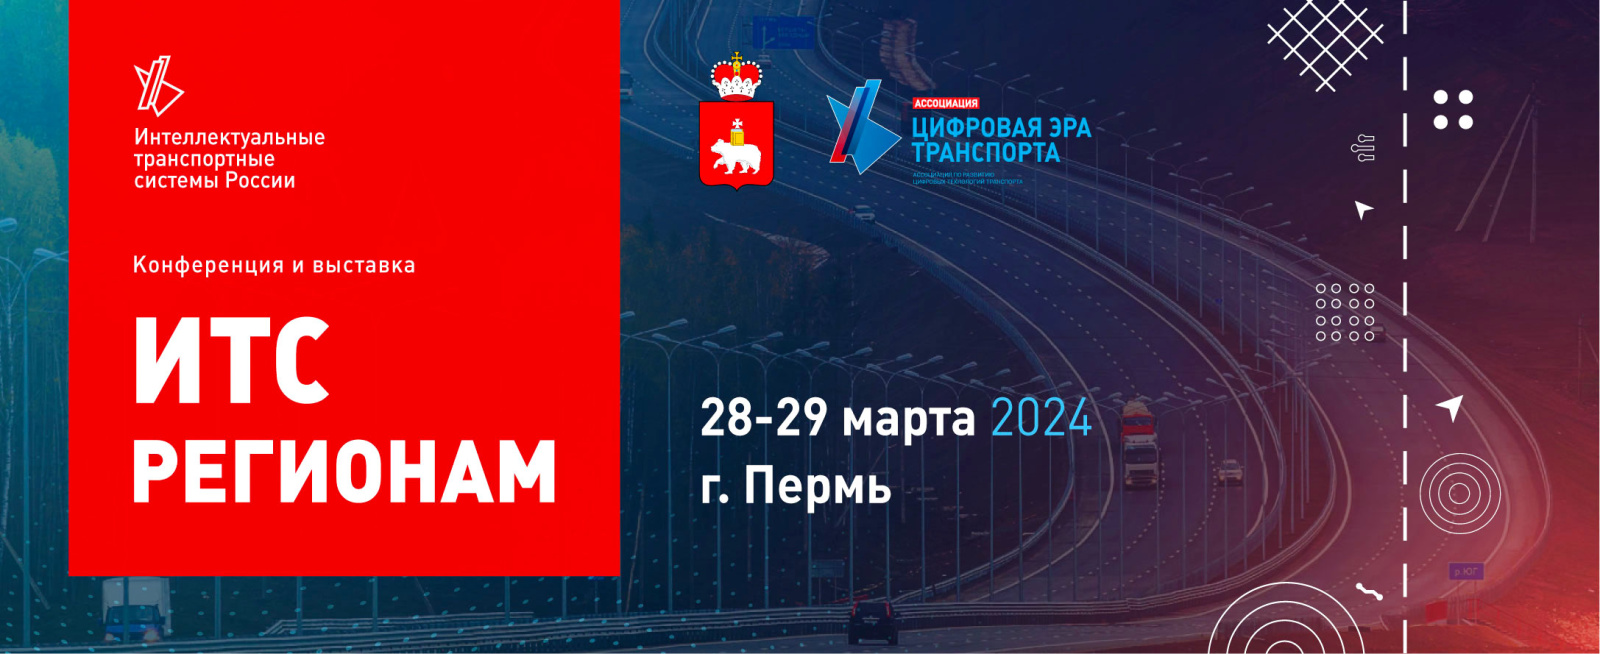 Конференция и выставка «ИТС регионам» пройдет 28-29 марта 2024 года в Перми